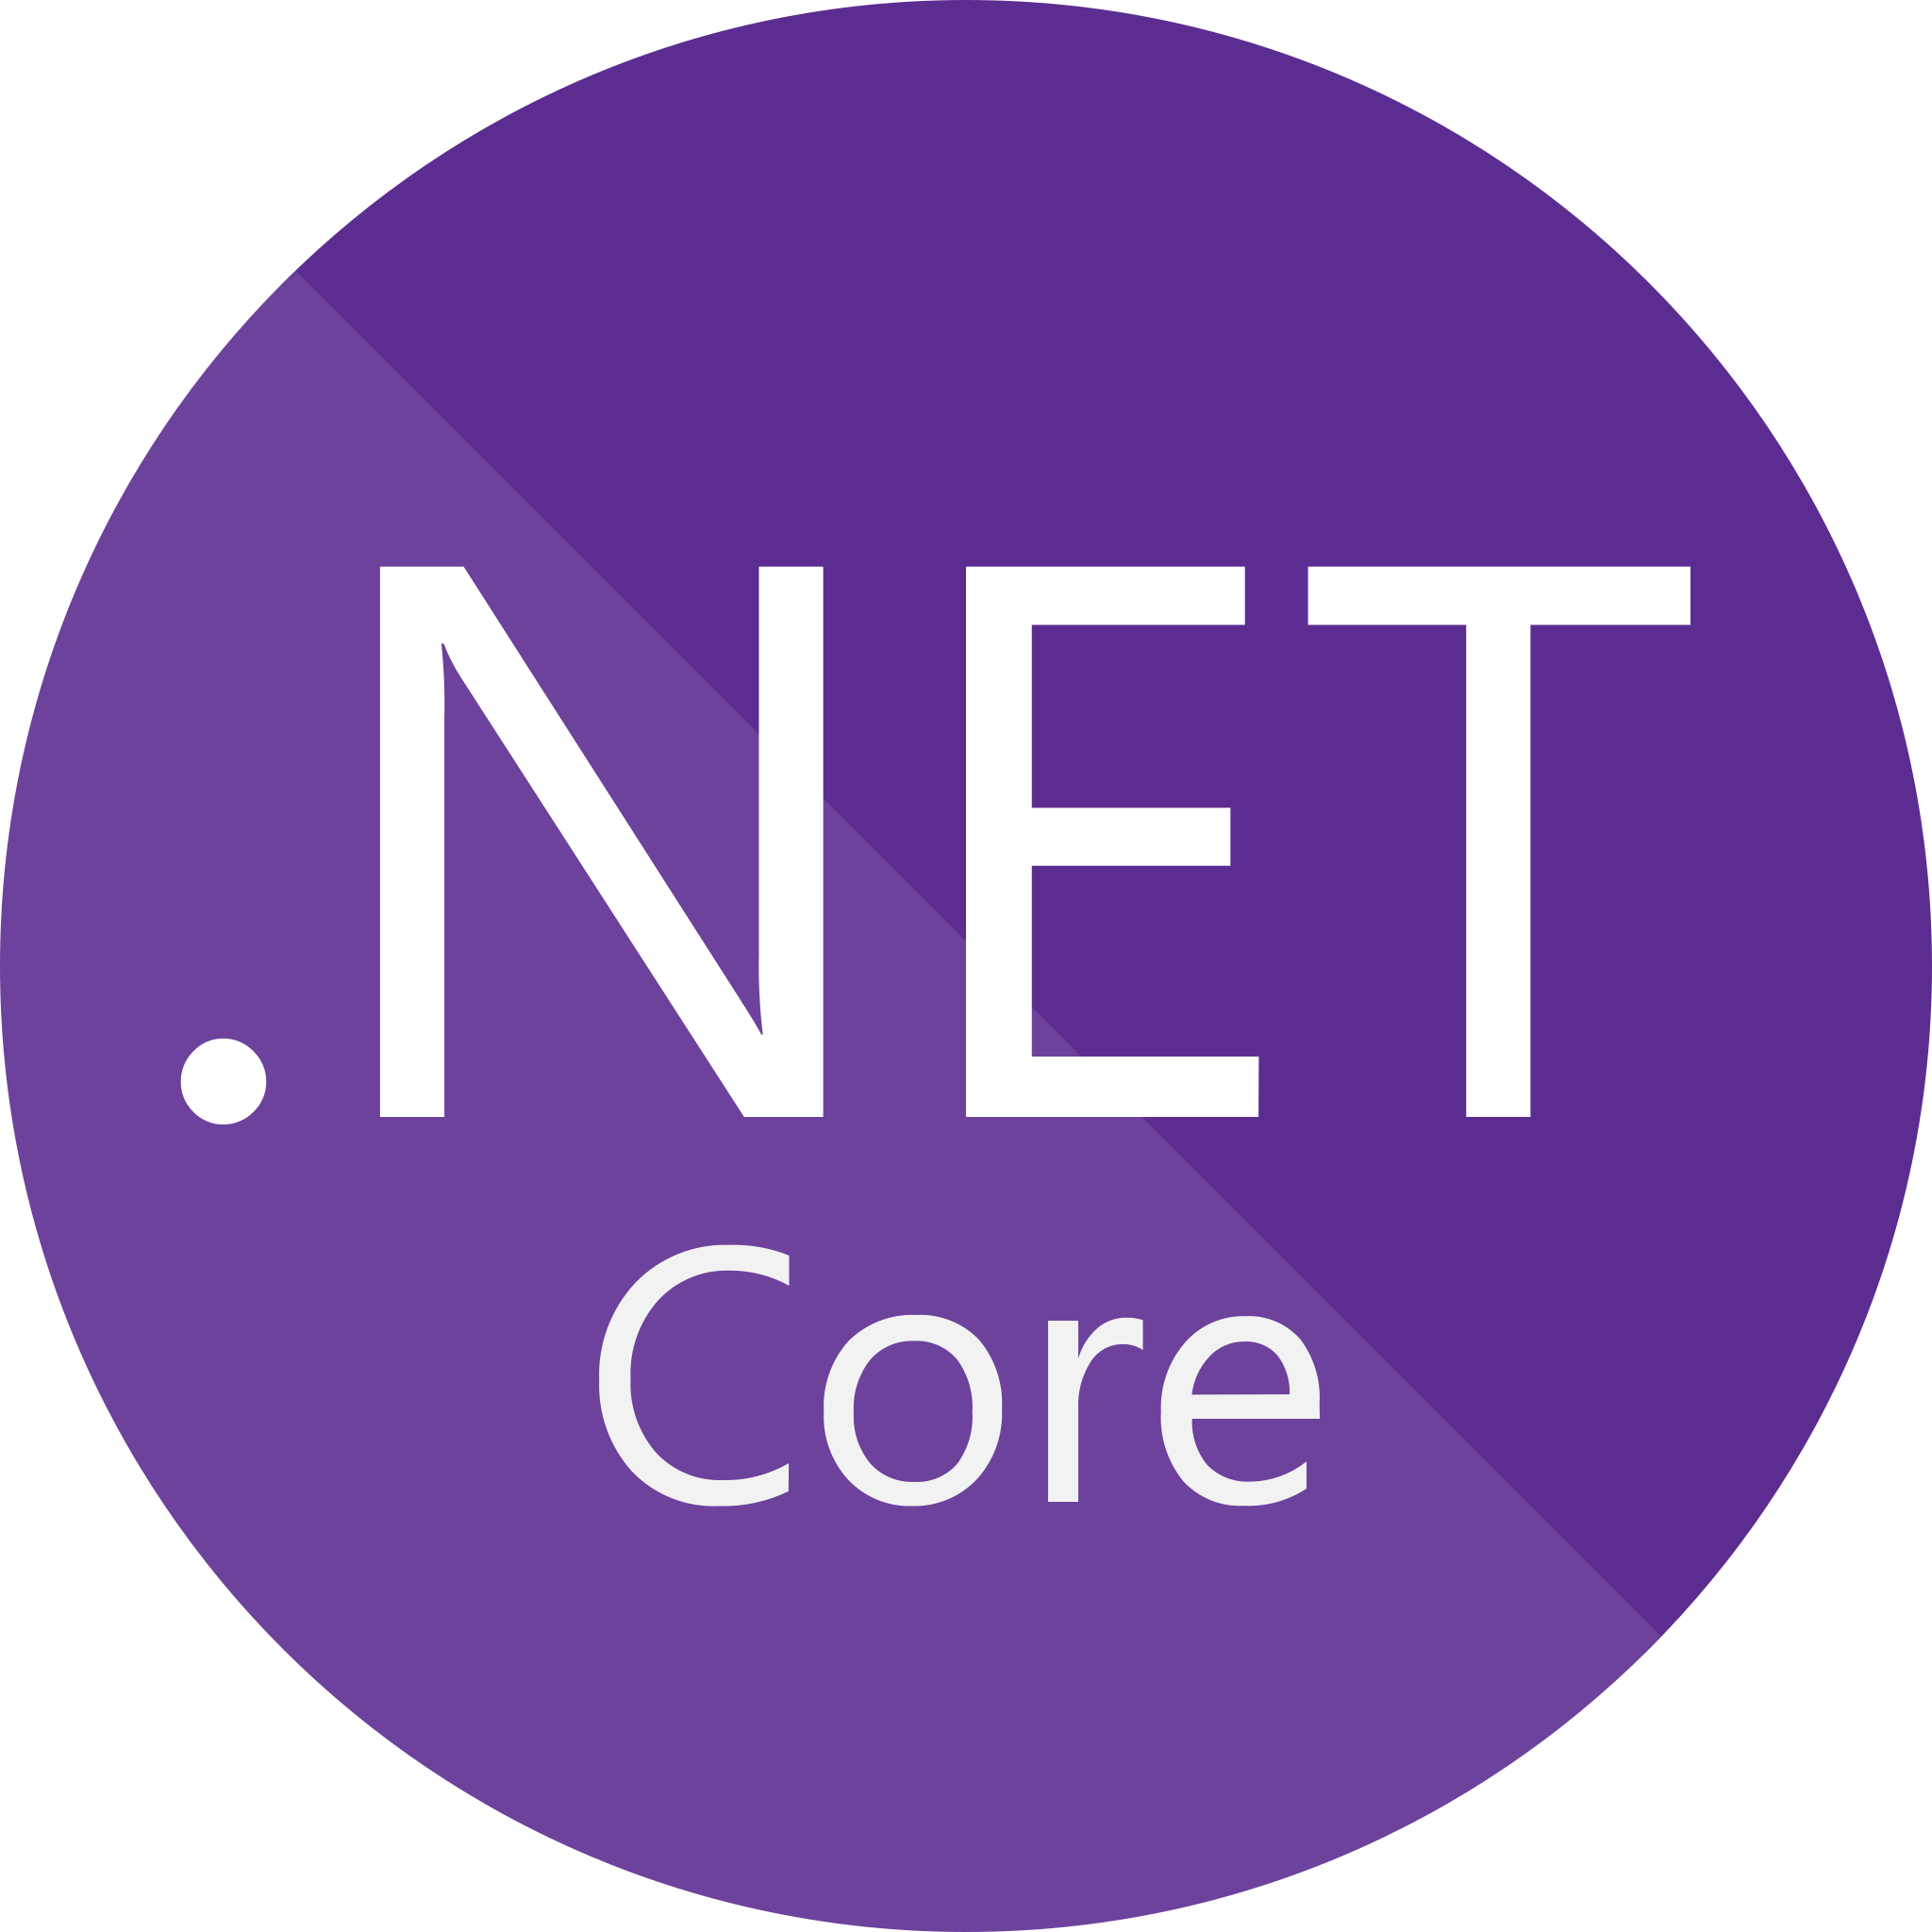 NET_Core